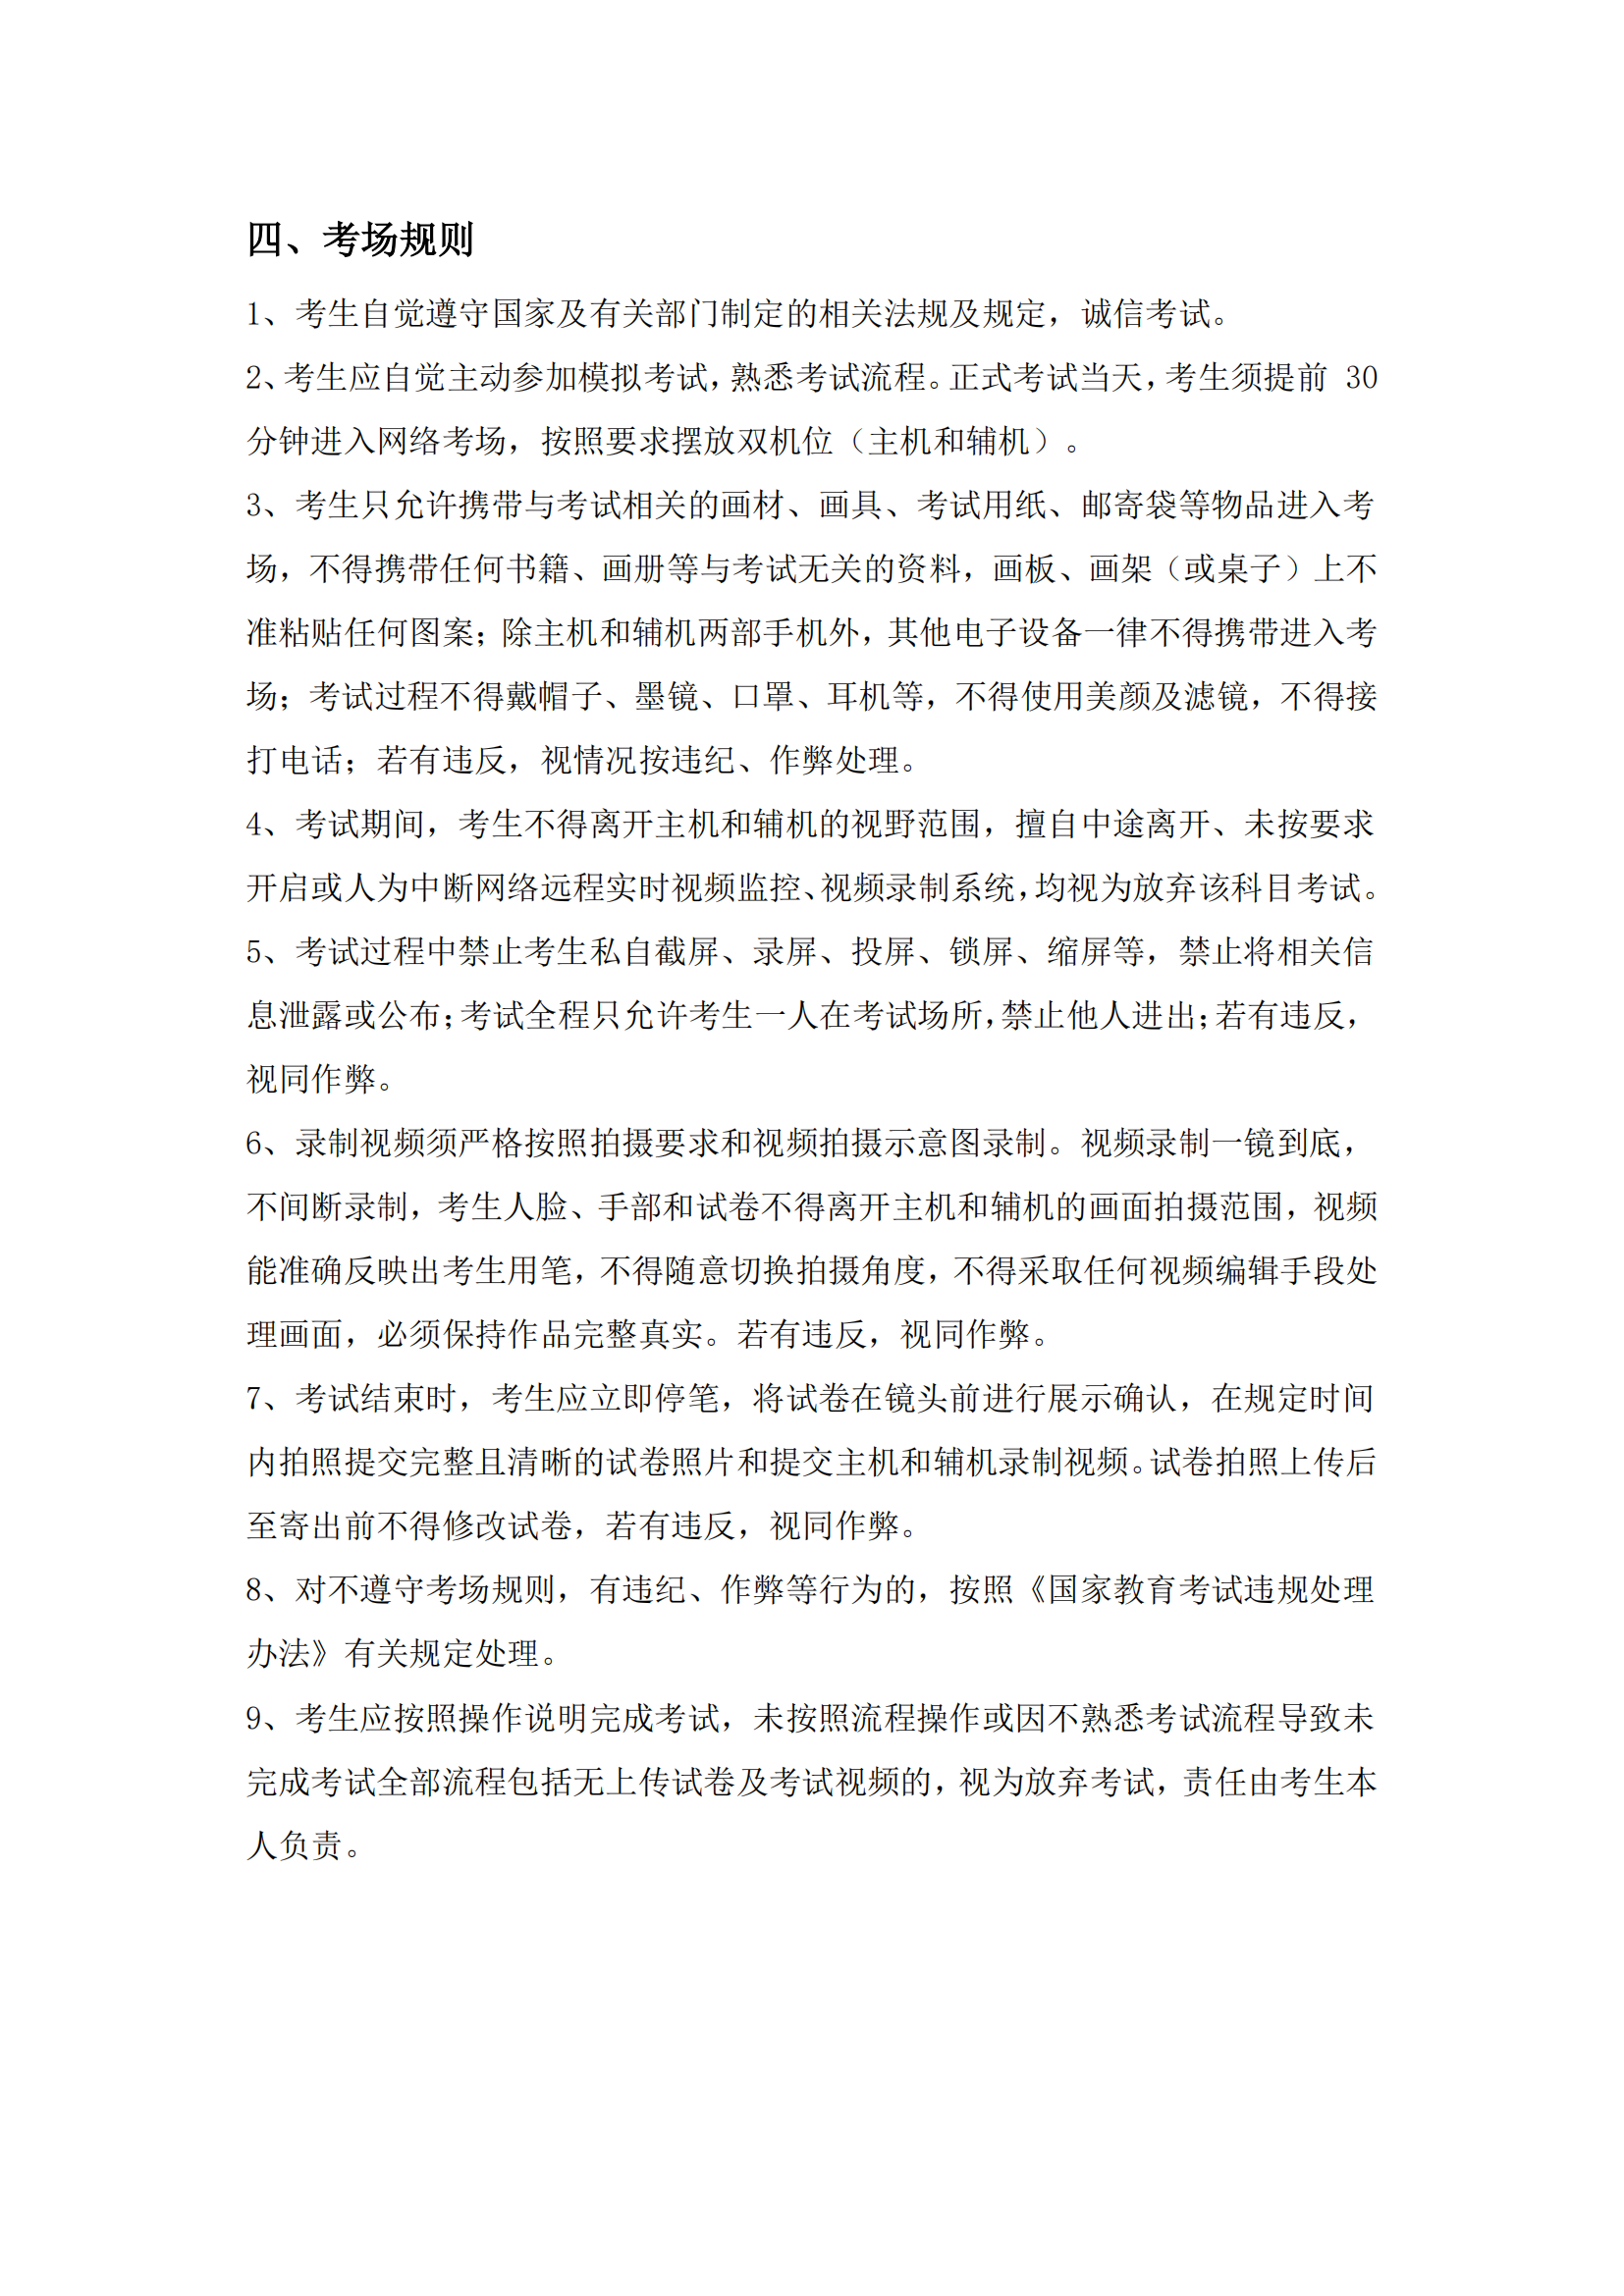 附件1：广州美术学院艺术升APP网络考试操作说明_15.png